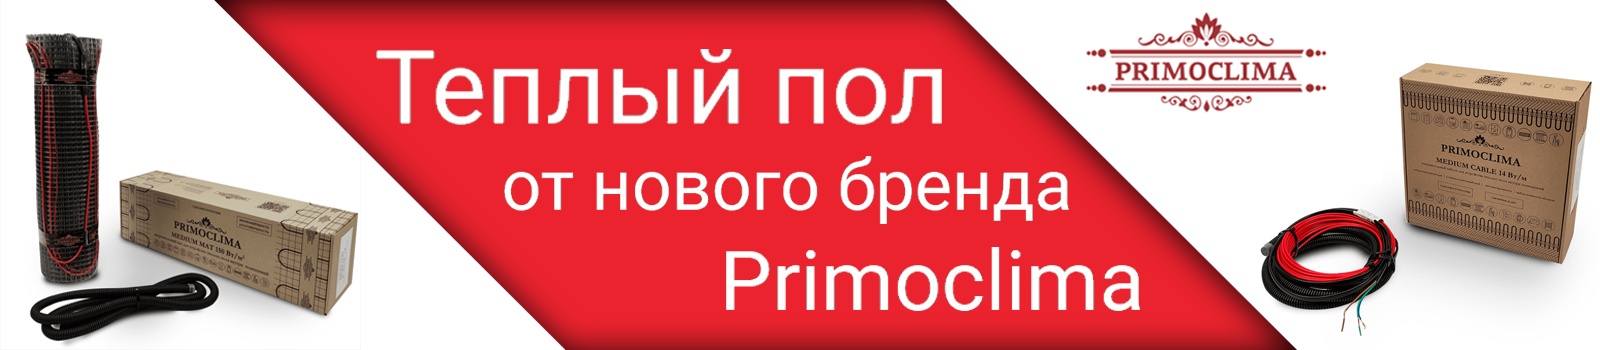 Новый бренд в продаже - Primoclima